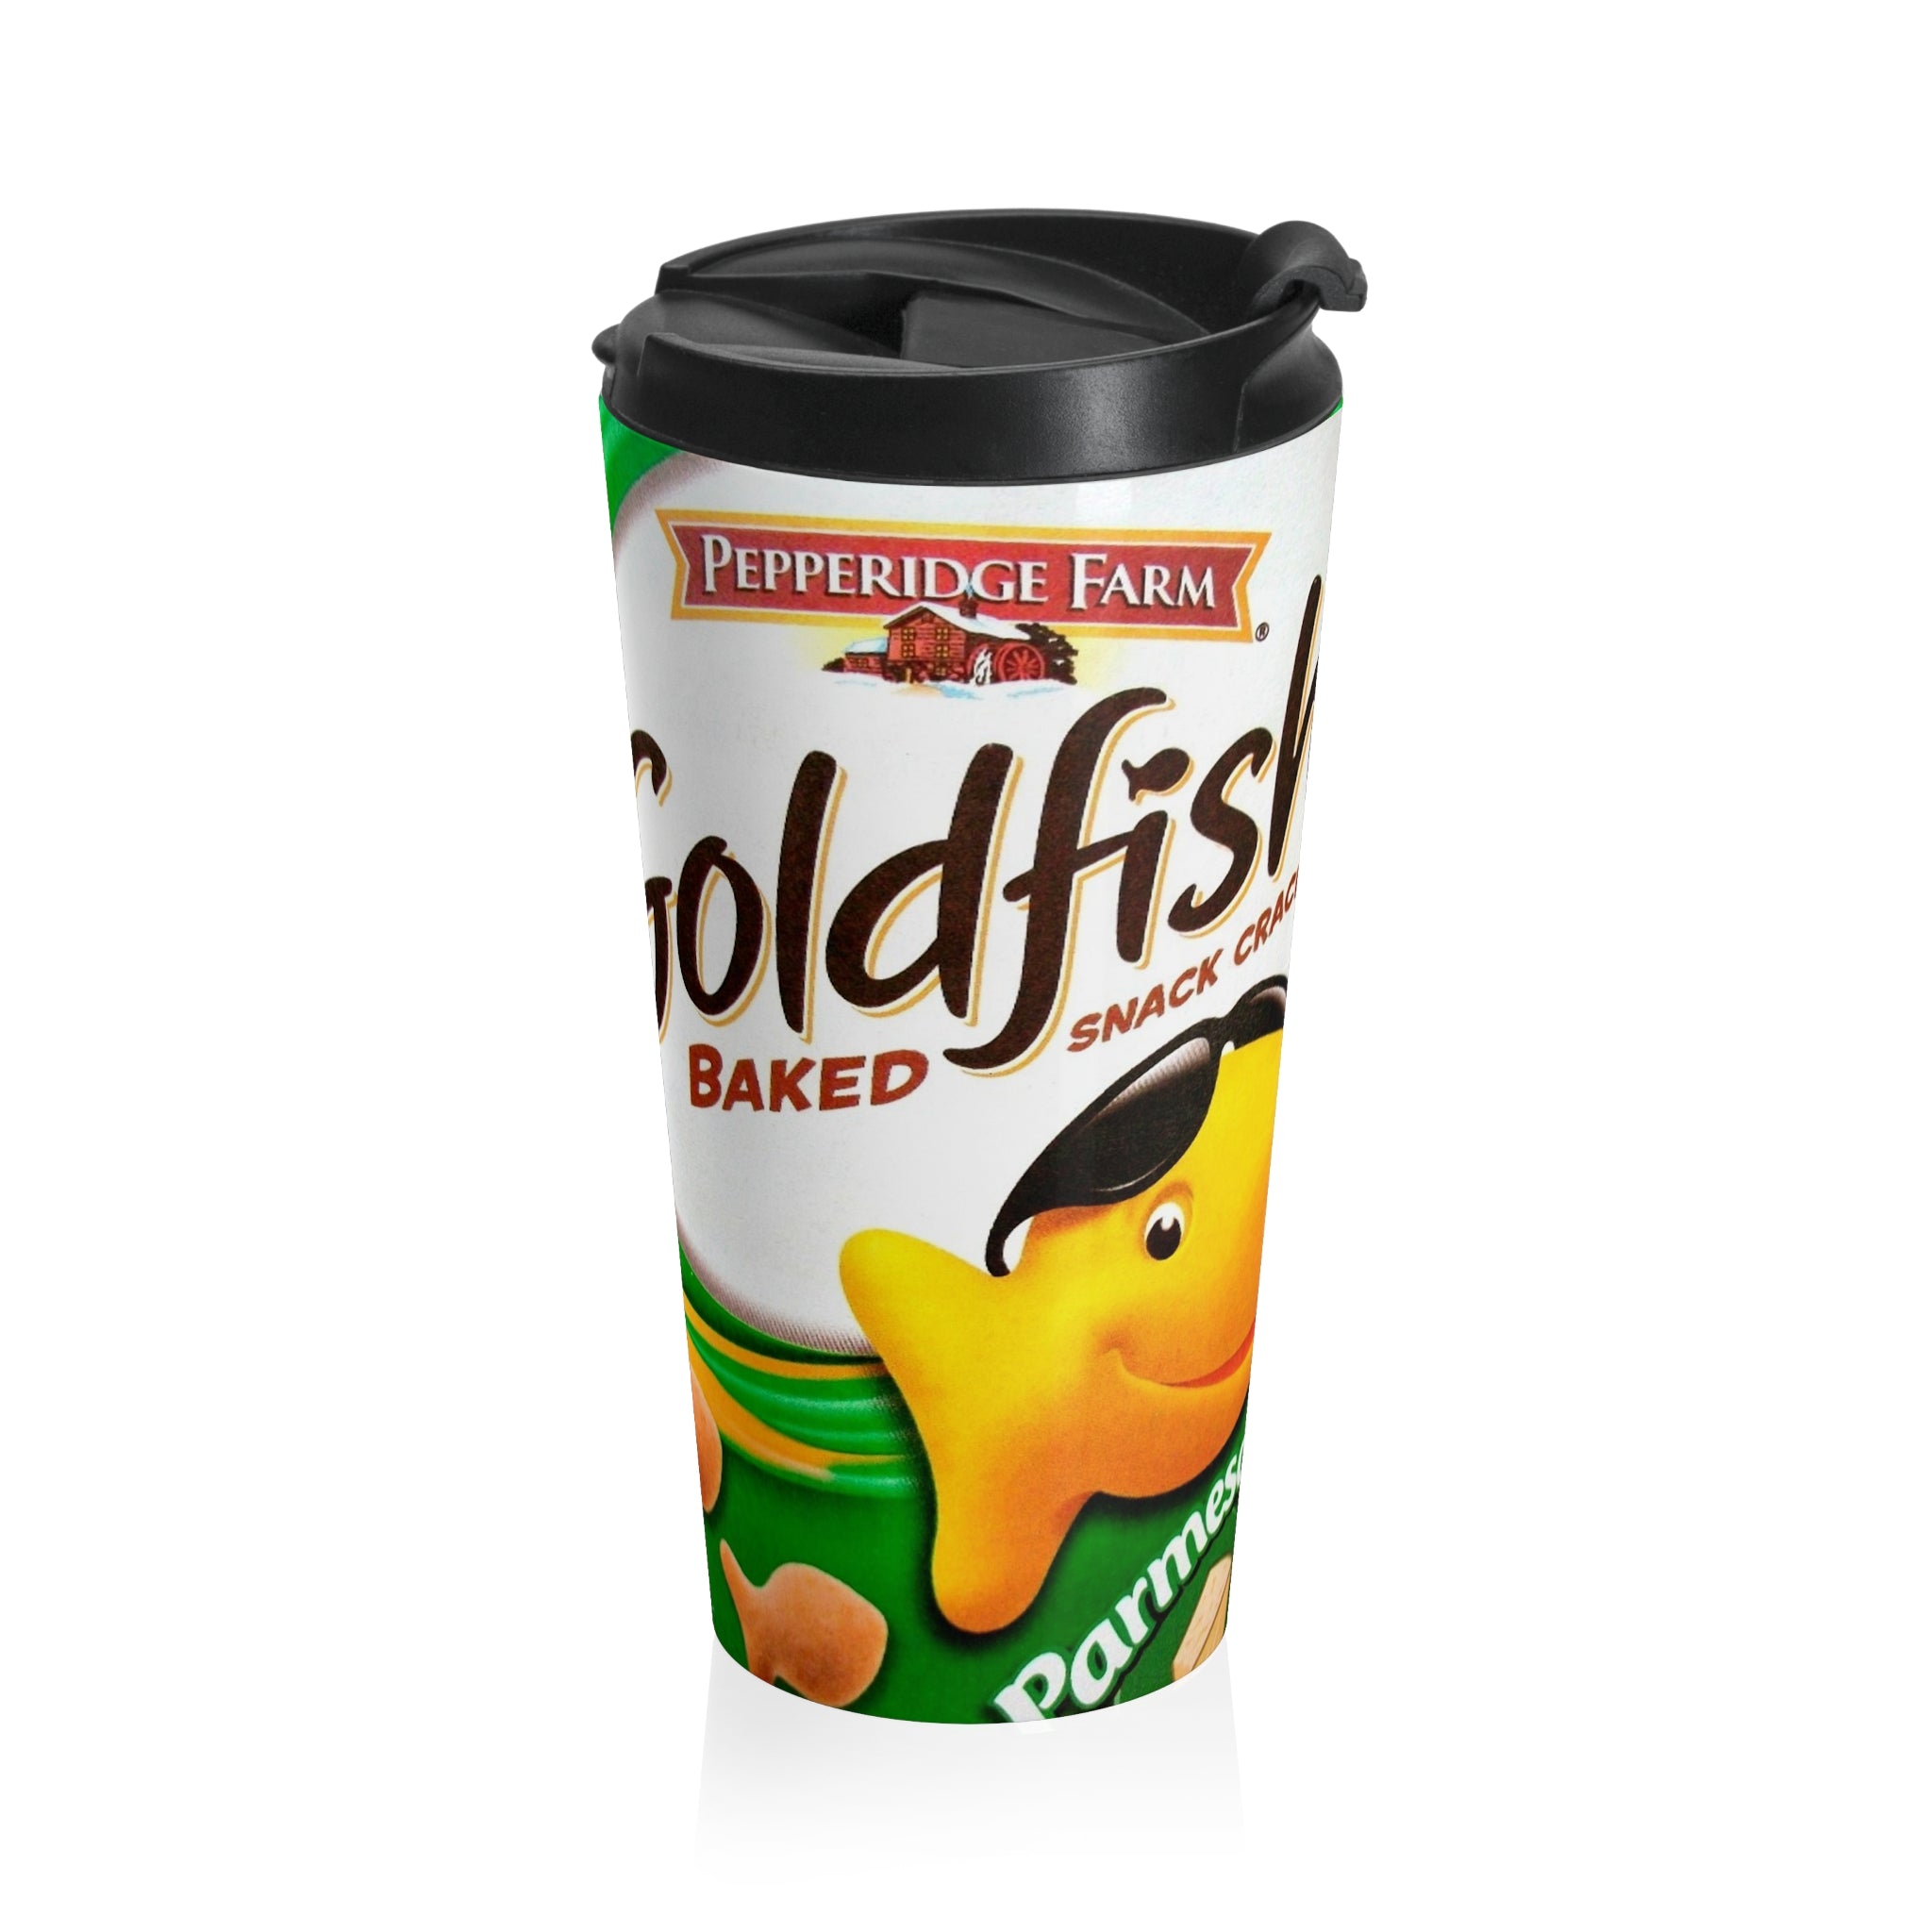 Goldfish Crackers Parmesan Stainless Steel Travel Mug